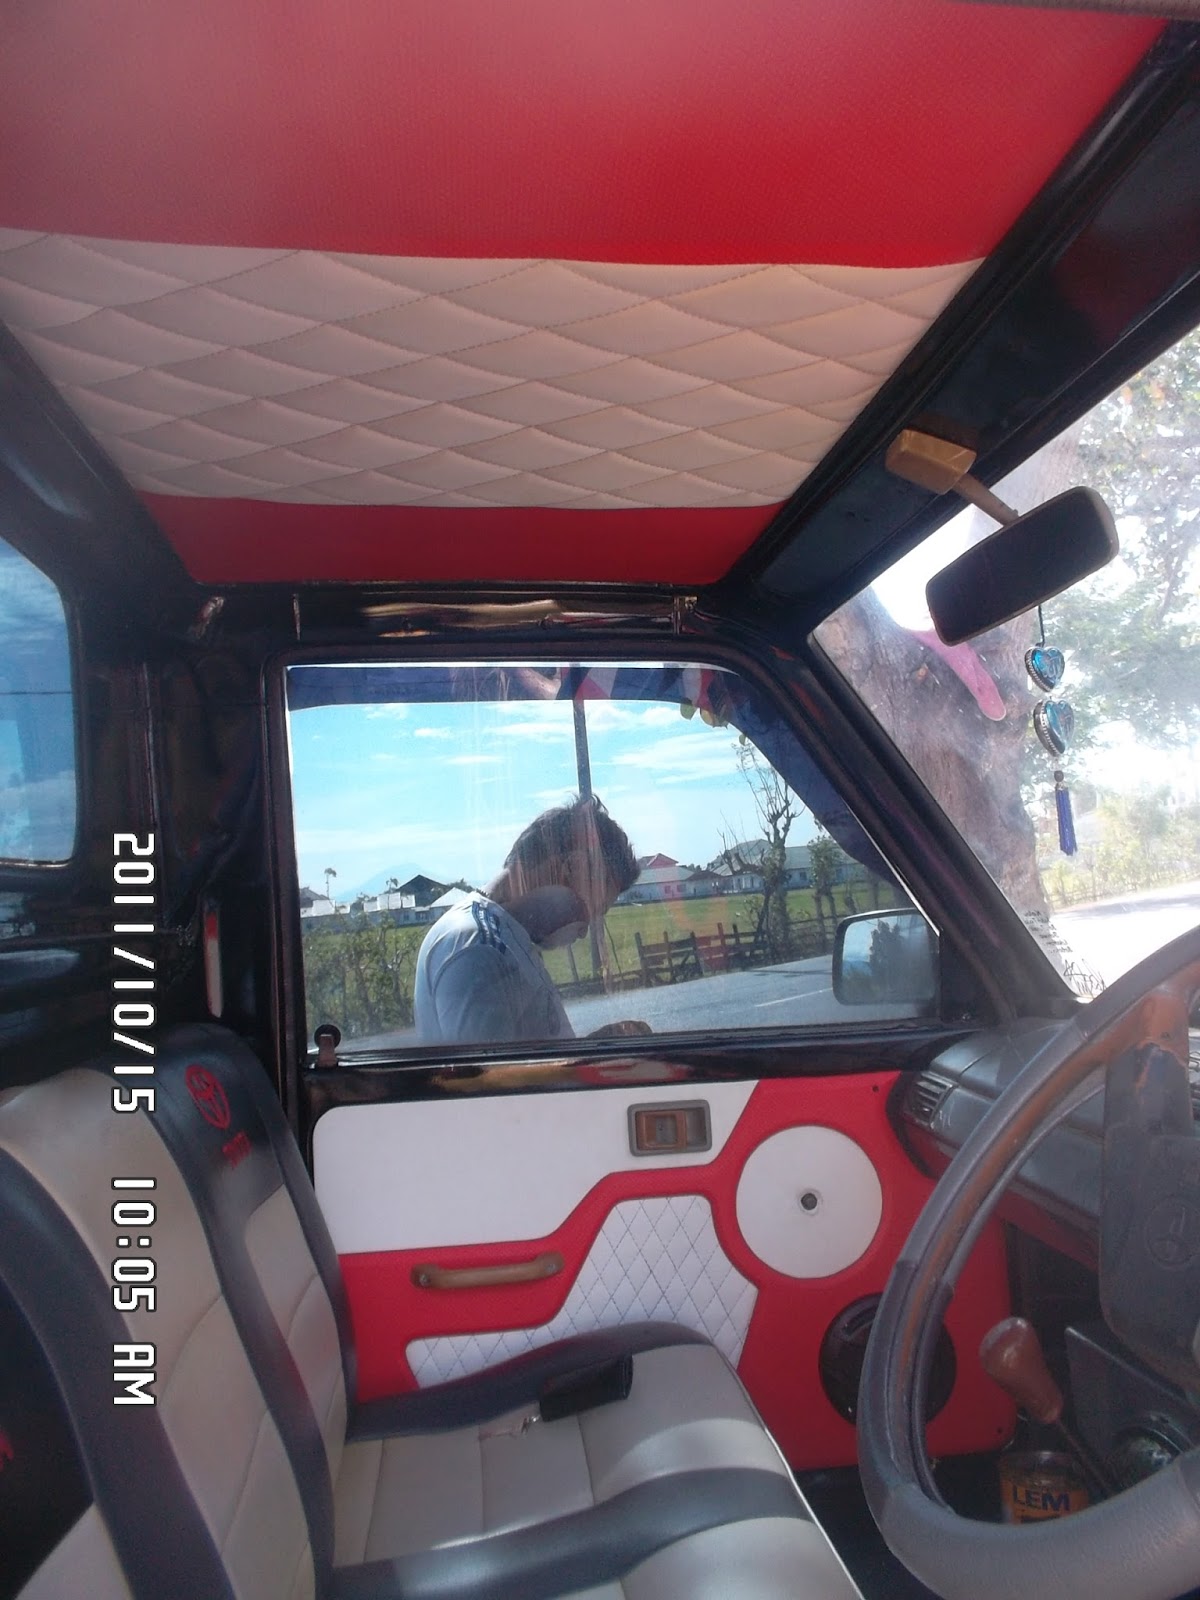 Gambar Modif Interior Mobil Kijang Super Sobat Modifikasi